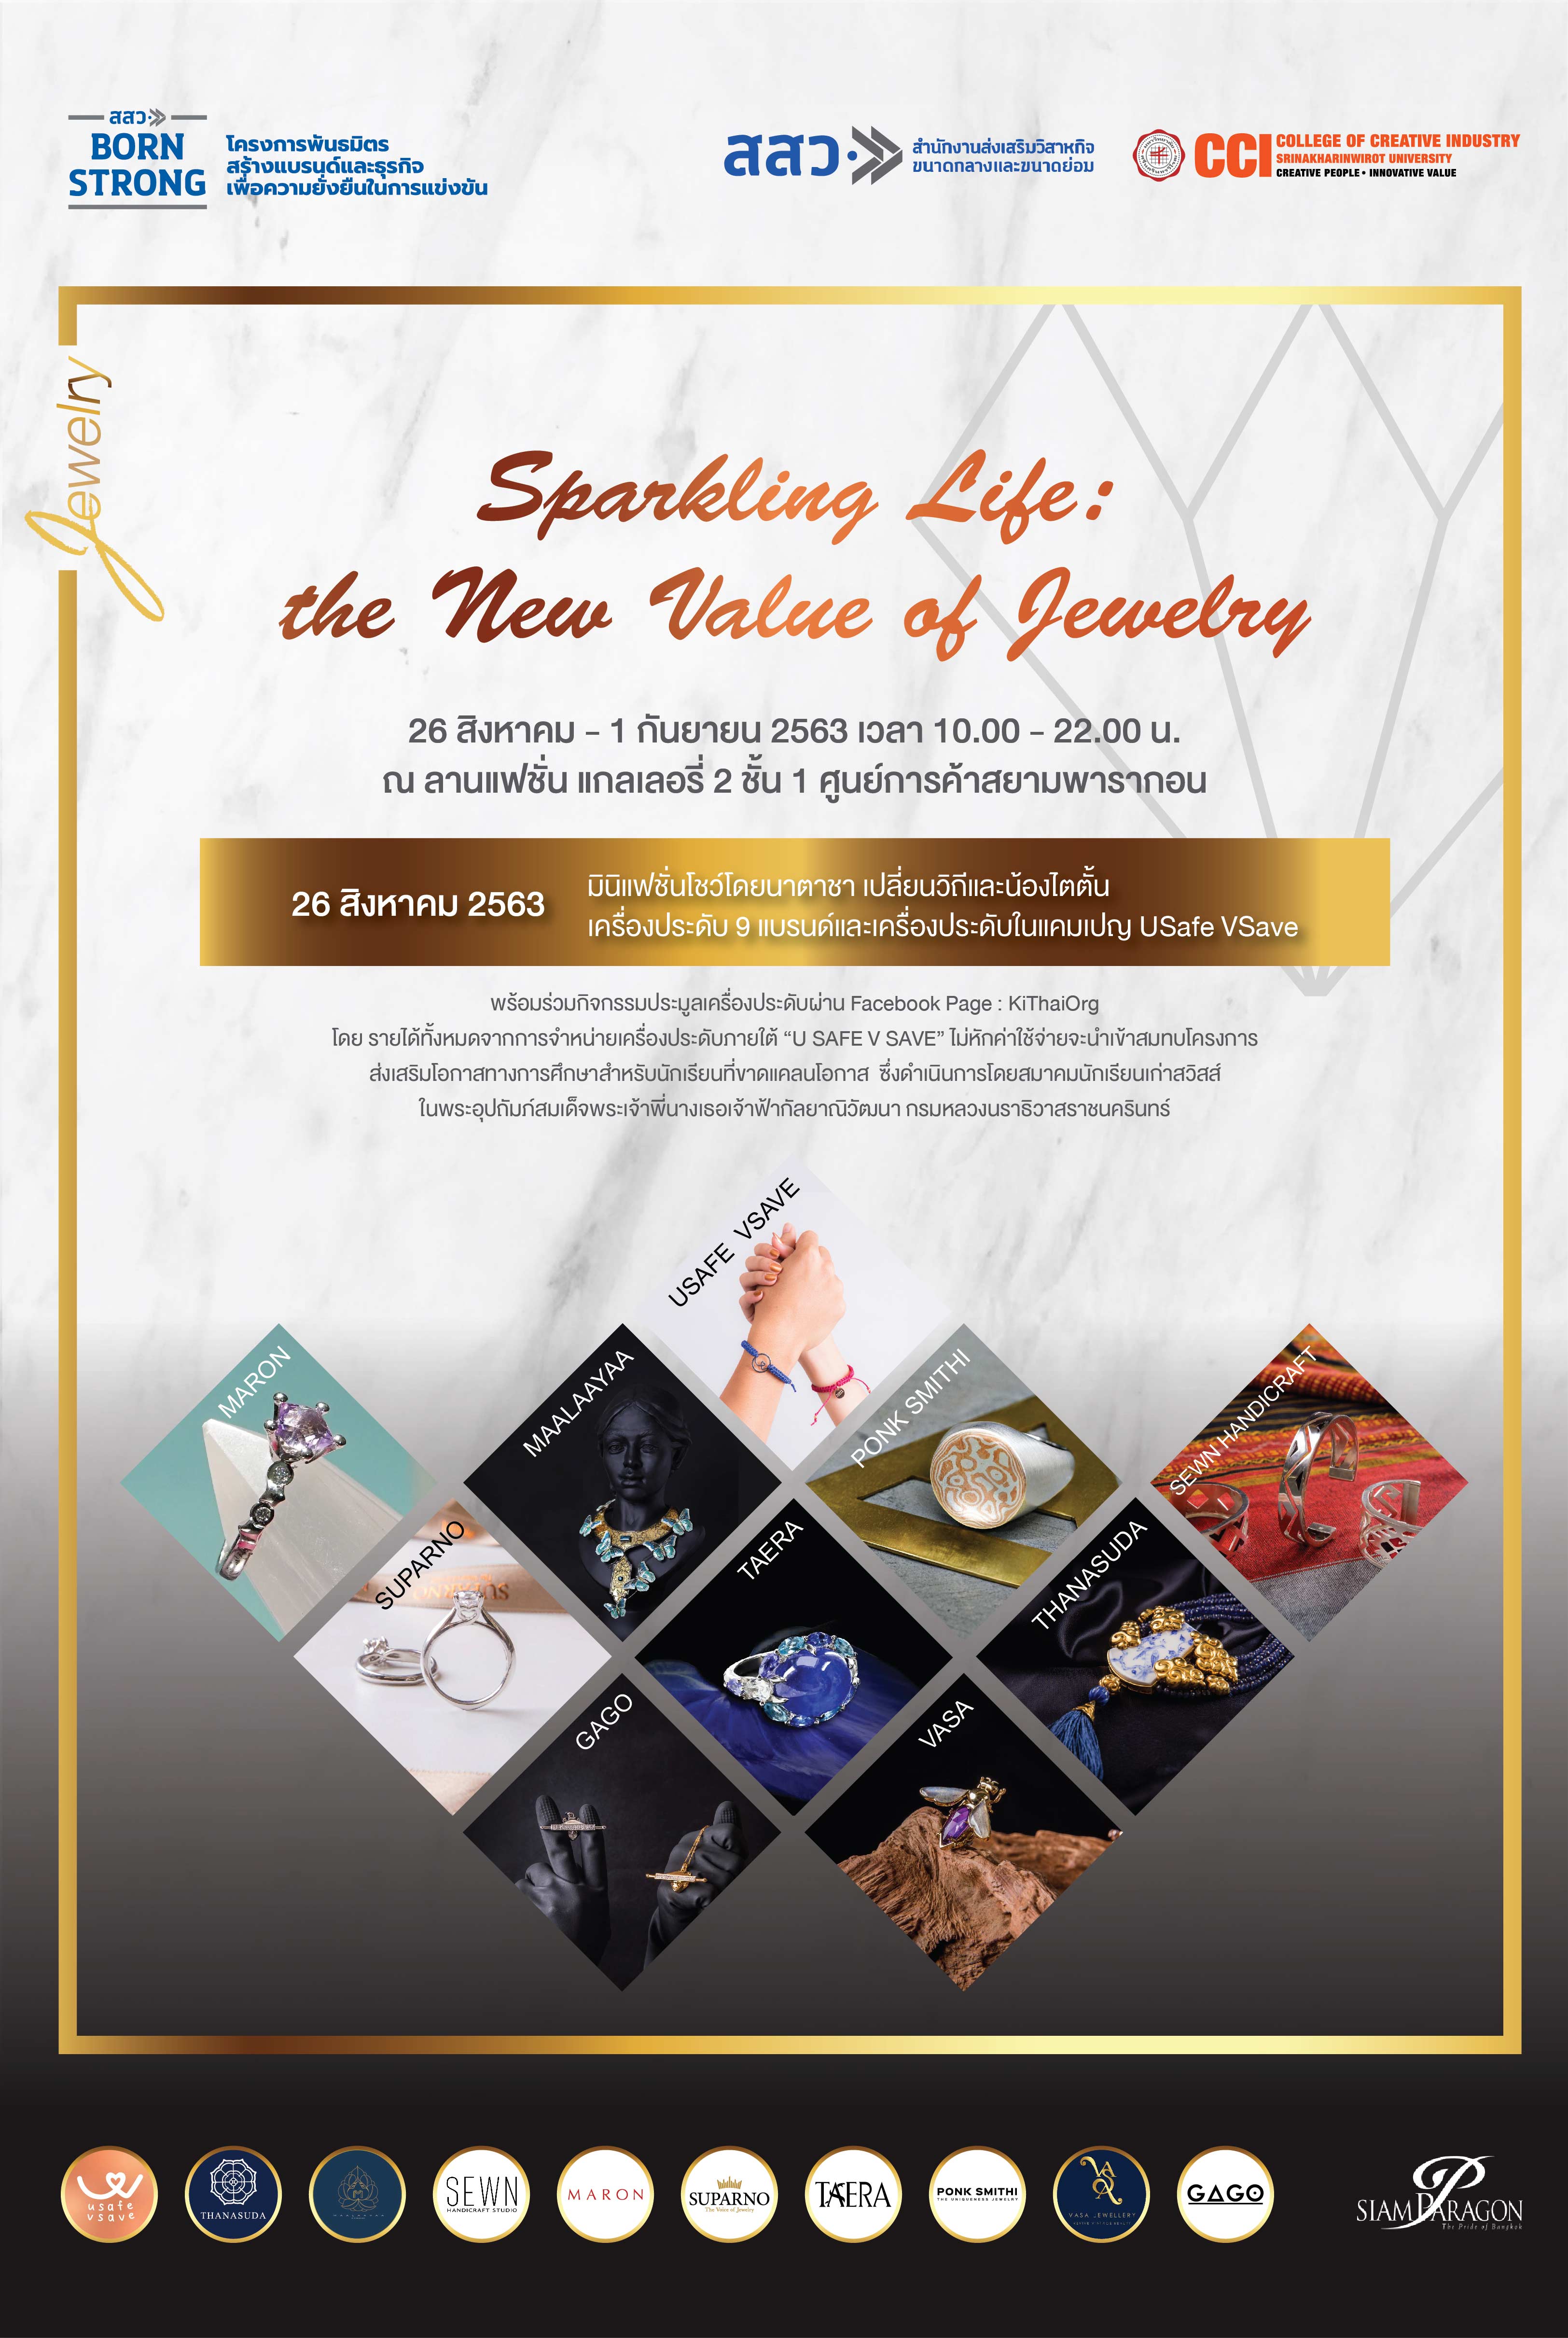 ชวนช้อปจิวเวลรี่ฝีมือคนไทย ในงาน Sparkling Life: the New Value of Jewelry ระหว่างวันที่ 26 สิงหาคม - 1 กันยายนนี้ ณ ชั้น 1